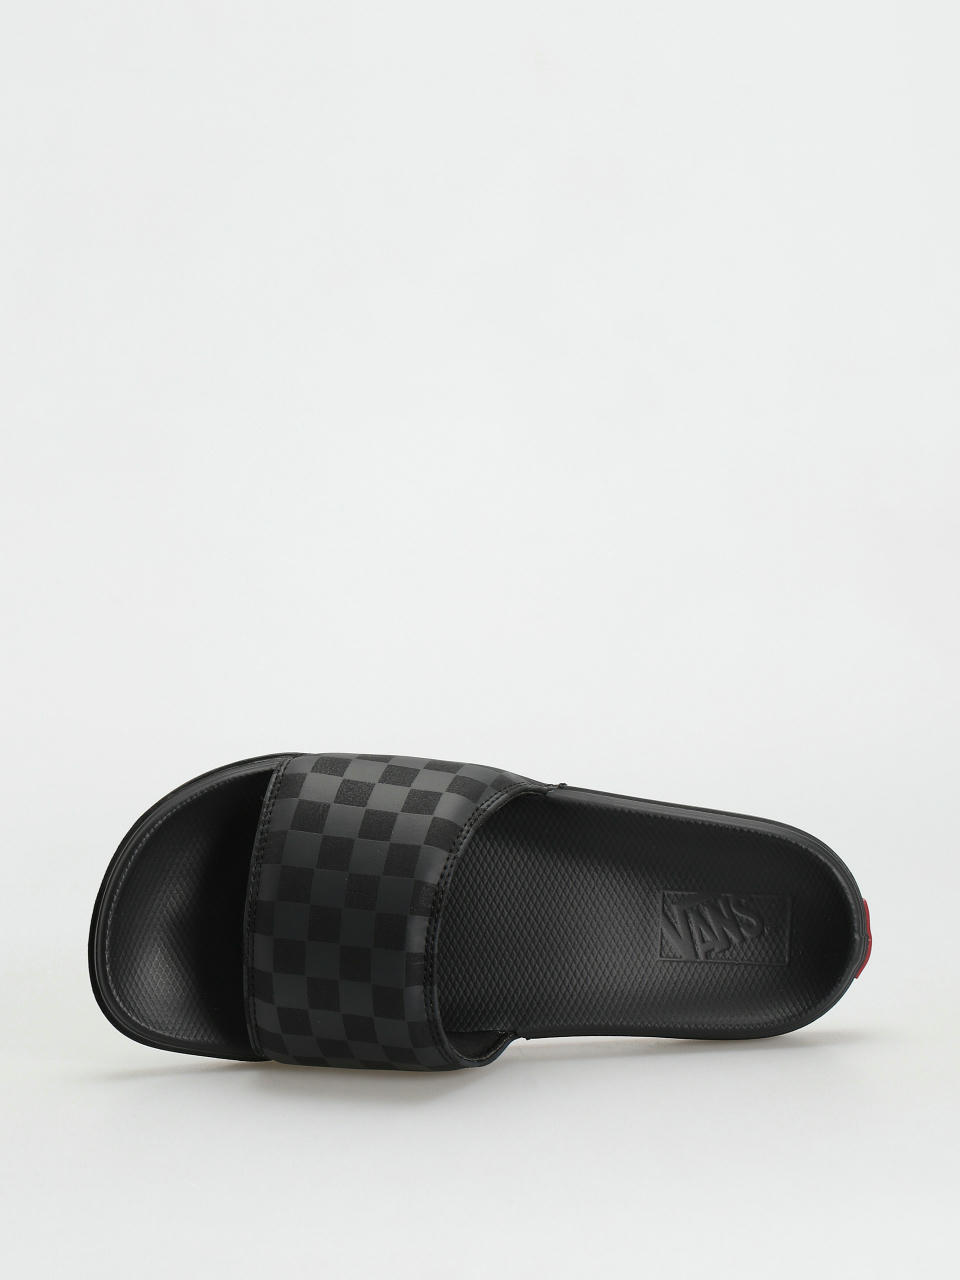 Checkerboard Mens La Costa Slide-On Shoes, Black, White